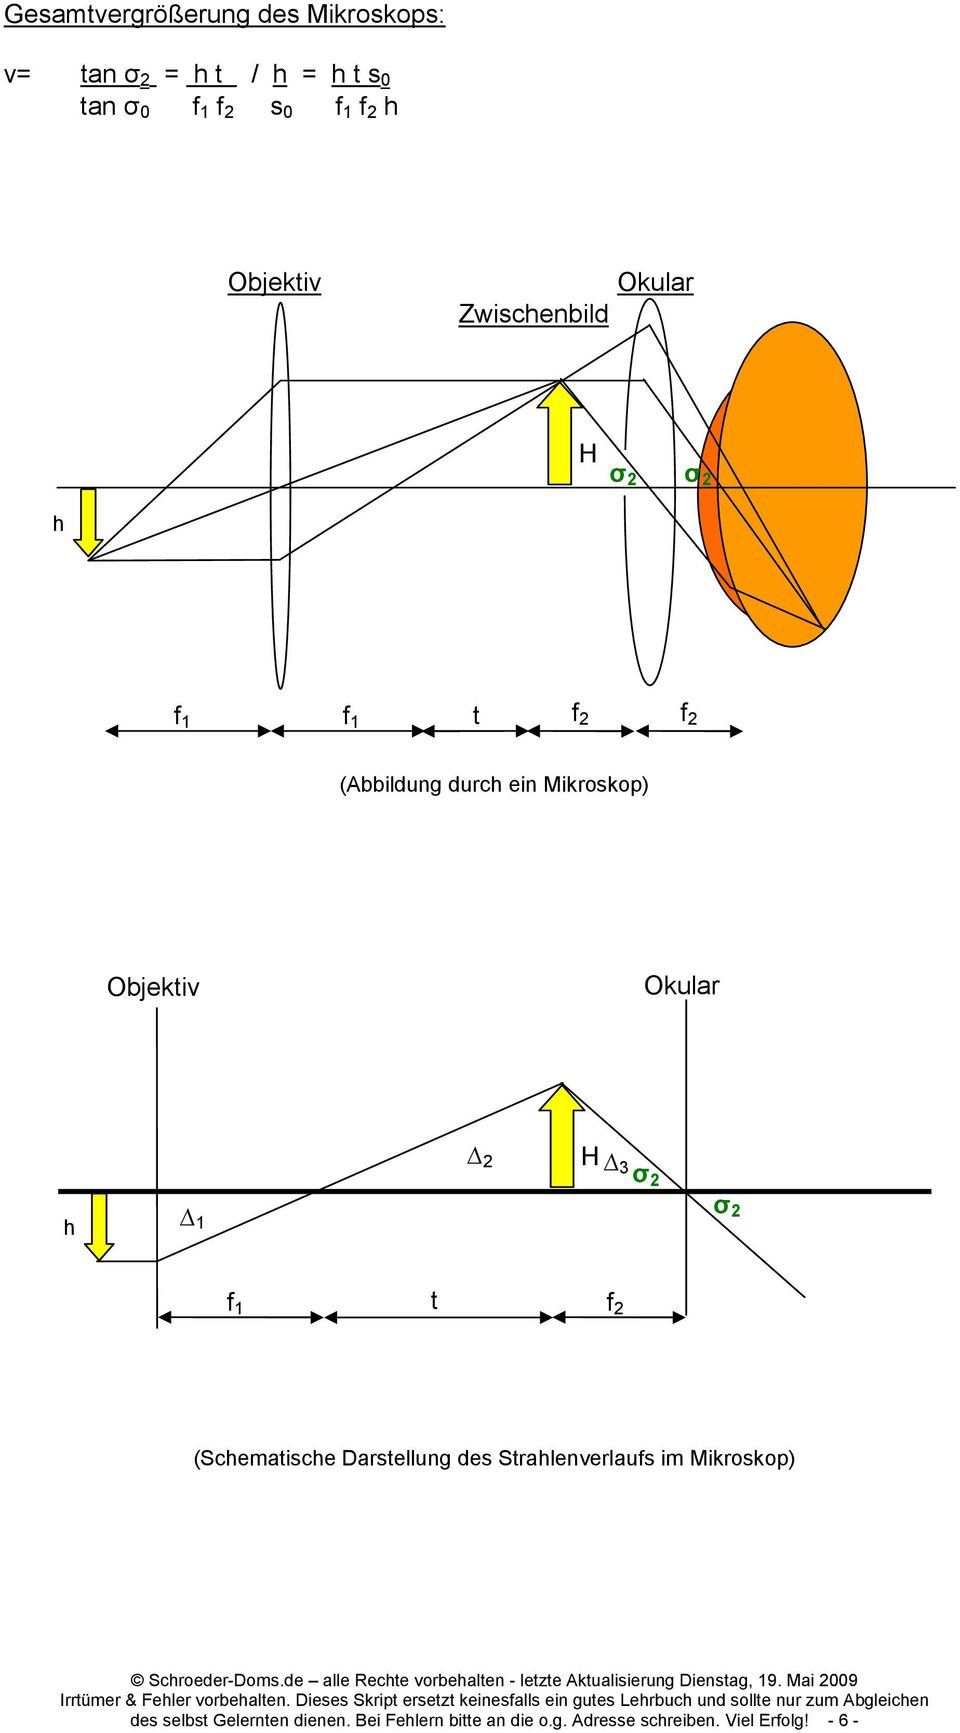 Objektiv Okular h 1 2 H 3 σ 2 σ 2 f 1 t f 2 (Schematische Darstellung des Strahlenverlaufs im